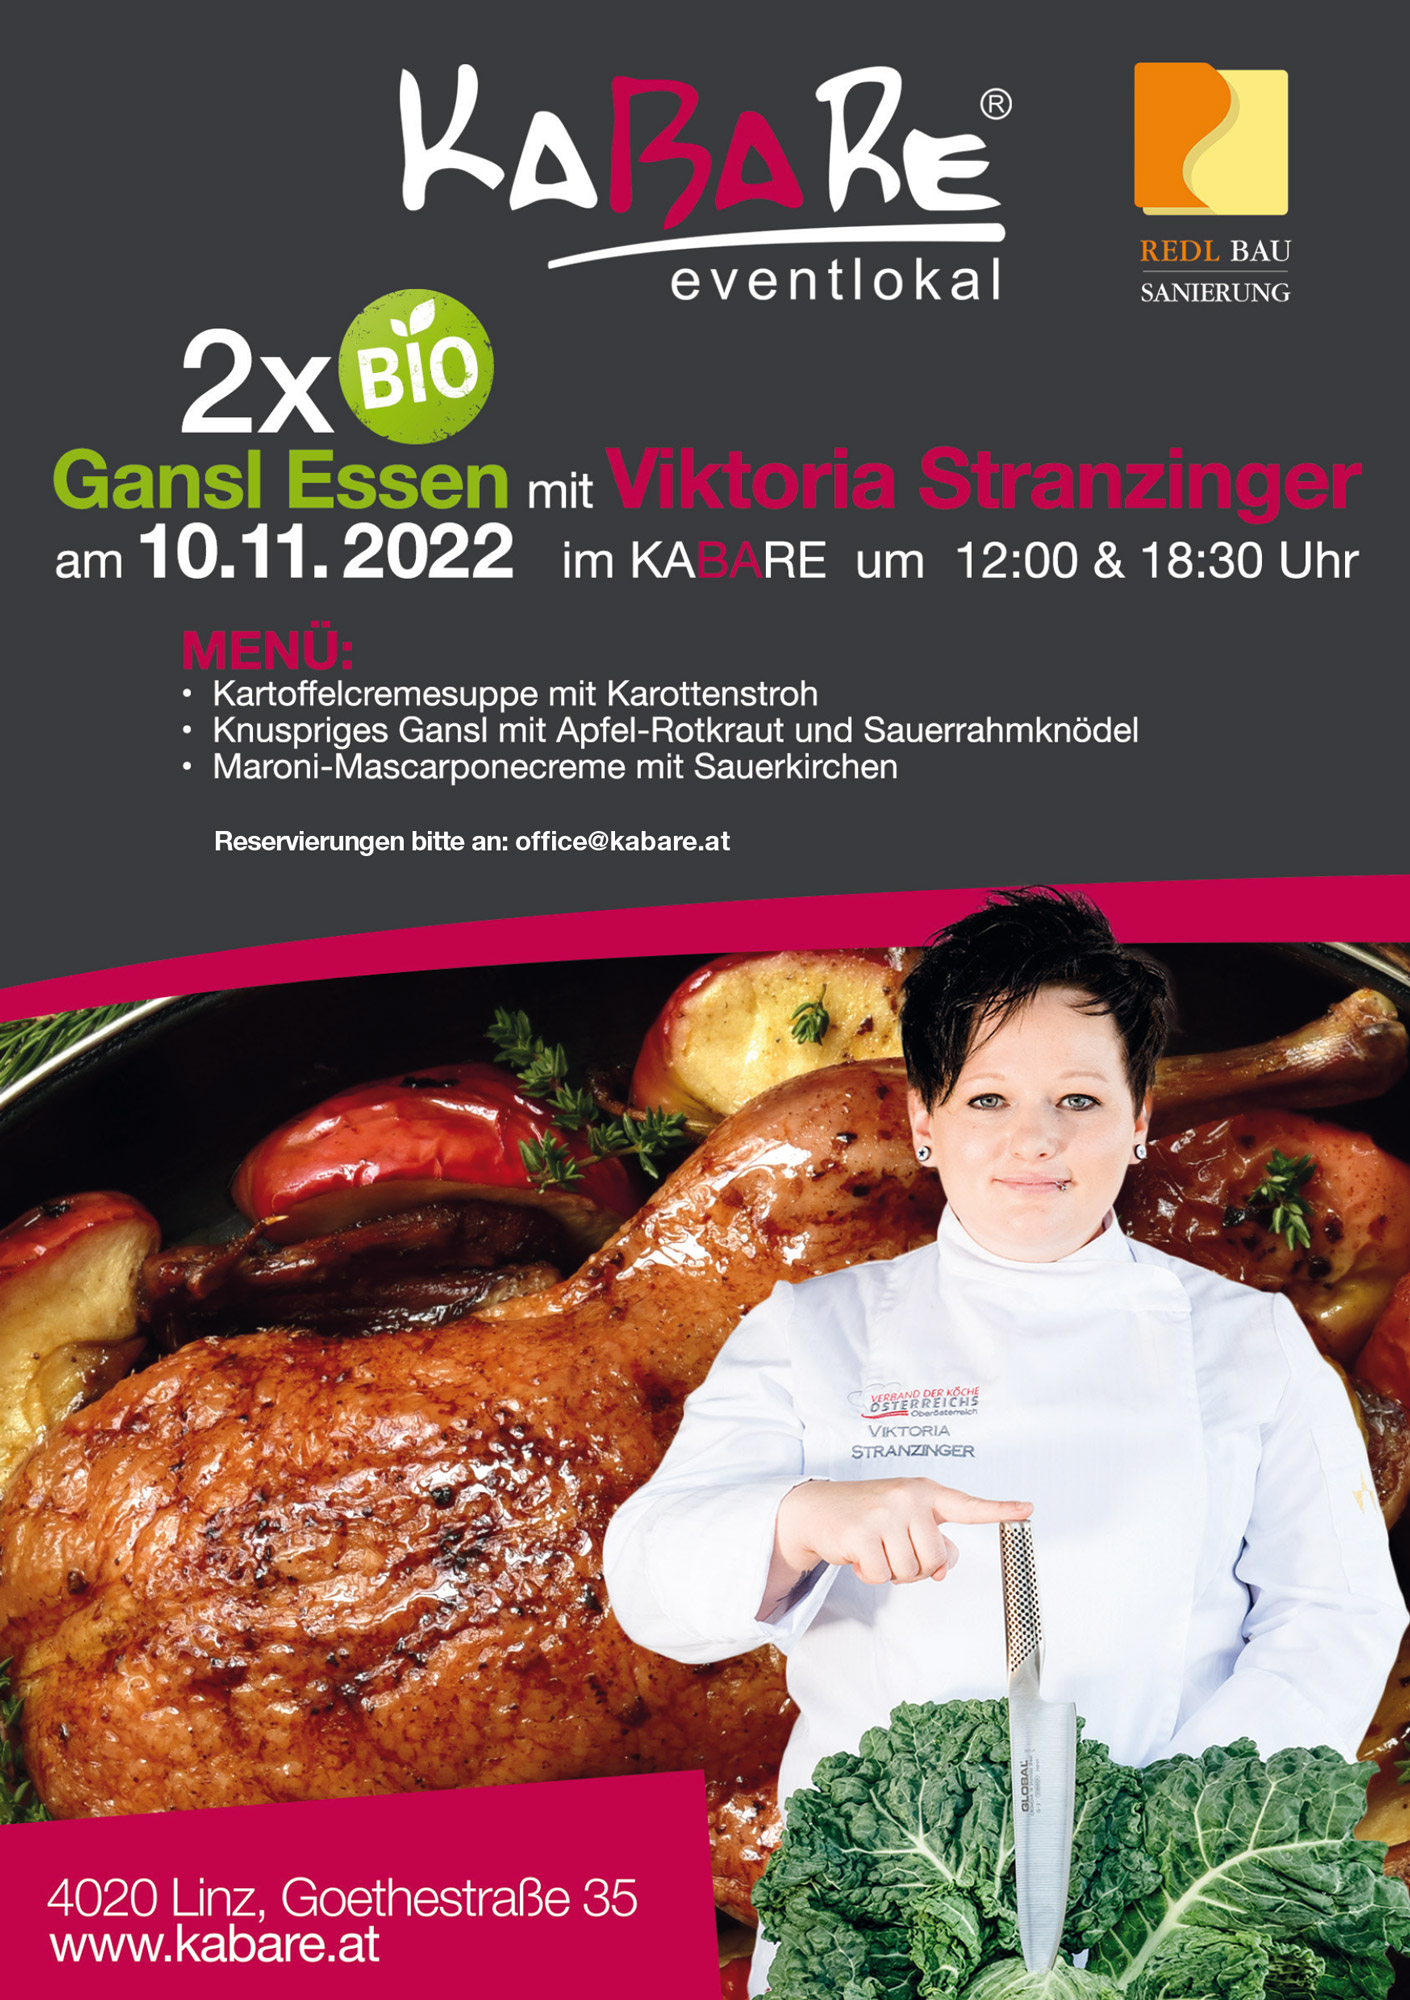 GANSL Essen mit Viktoria Stranzinger